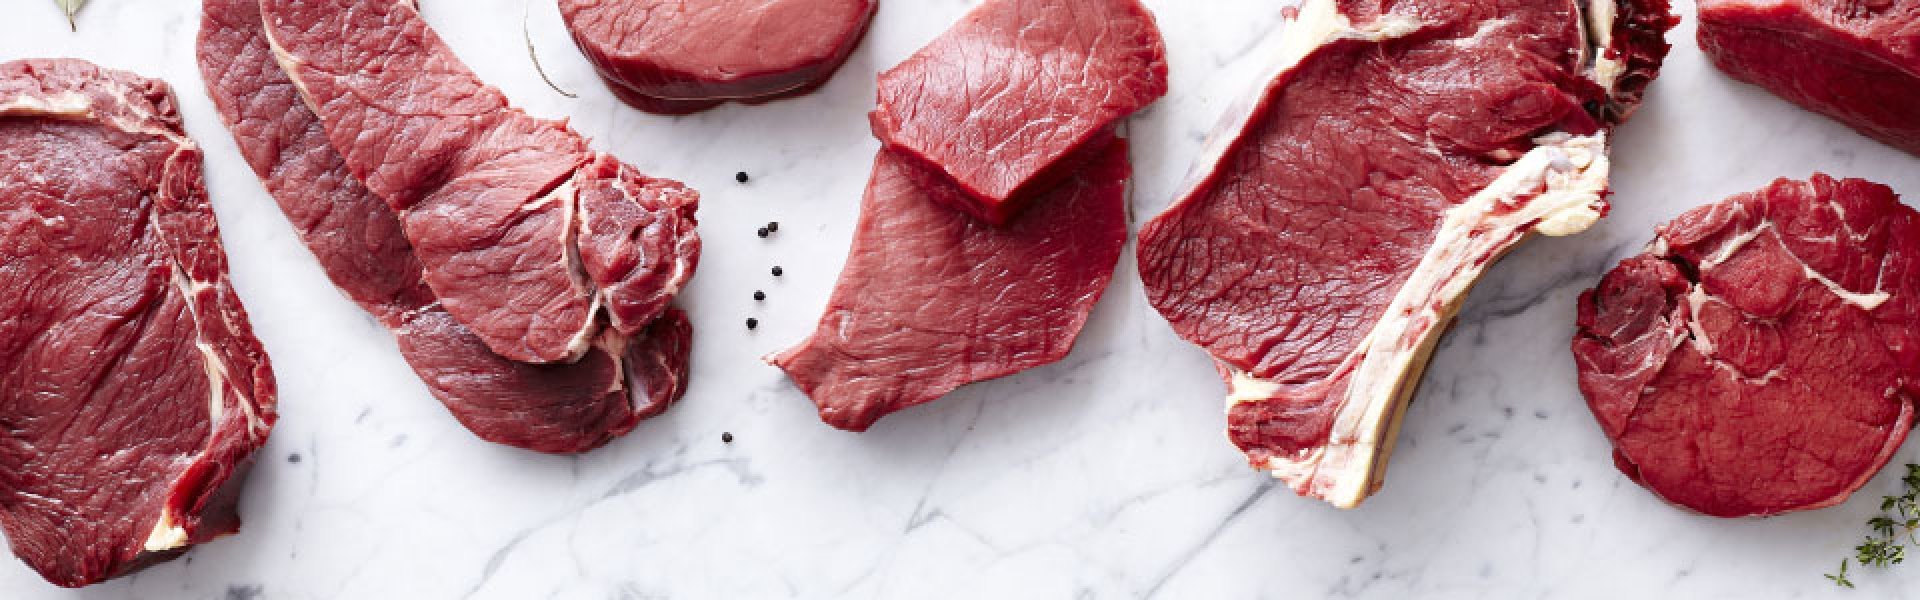 Hoe vlees bewaren? 